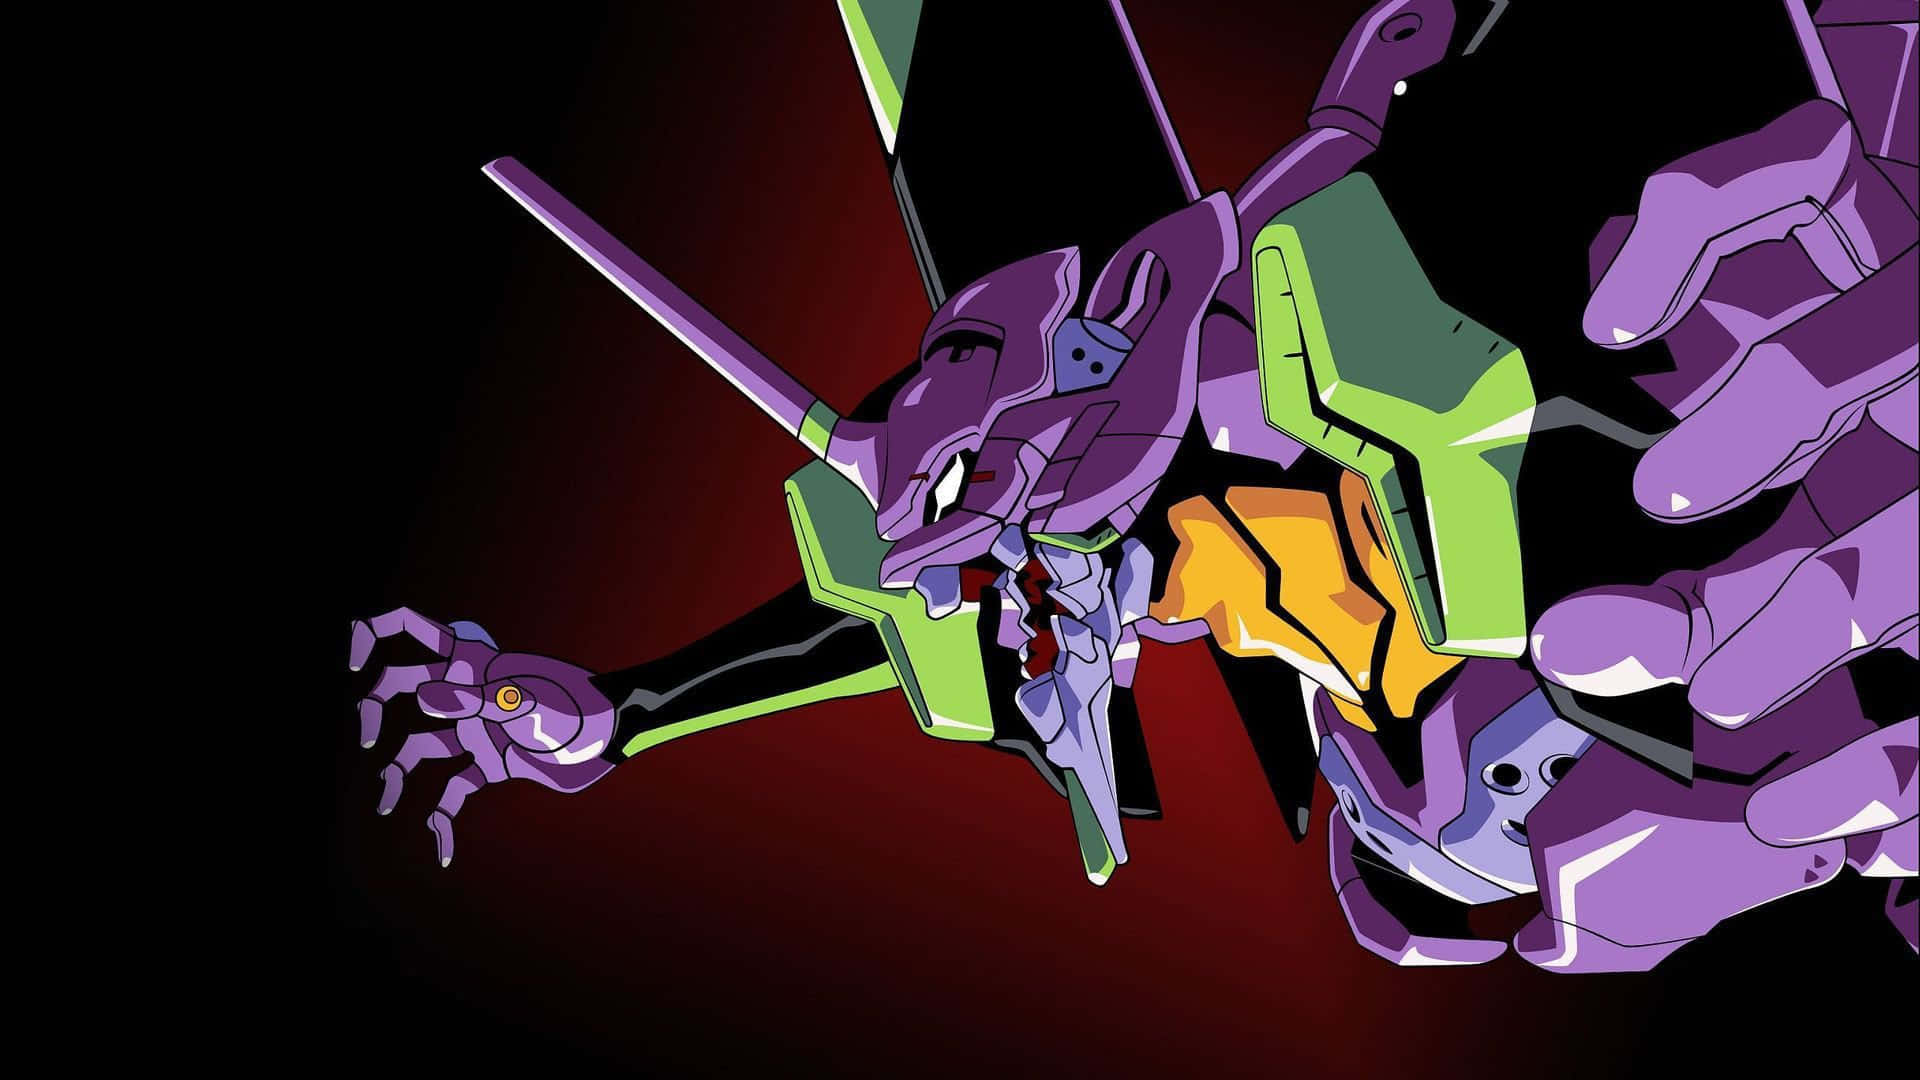 Eva 01, the Giant Purple Robot, Ready for Battle Wallpaper